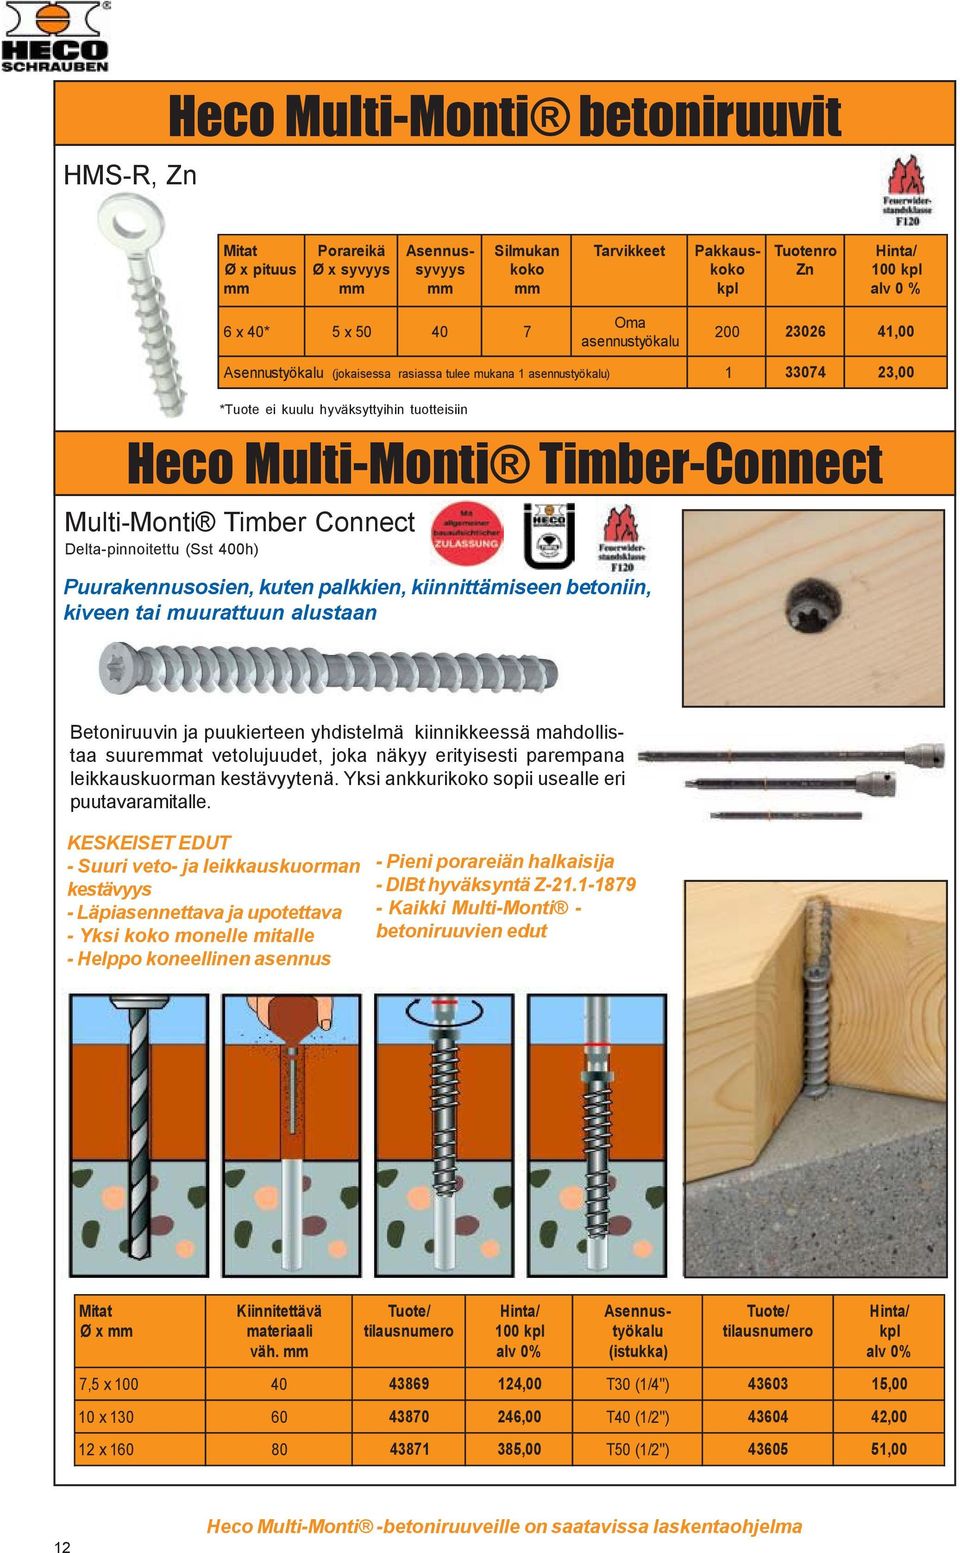 Multi-Monti Timber-Connect Puurakennusosien, kuten palkkien, kiinnittämiseen betoniin, kiveen tai muurattuun alustaan Betoniruuvin ja puukierteen yhdistelmä kiinnikkeessä mahdollistaa suureat